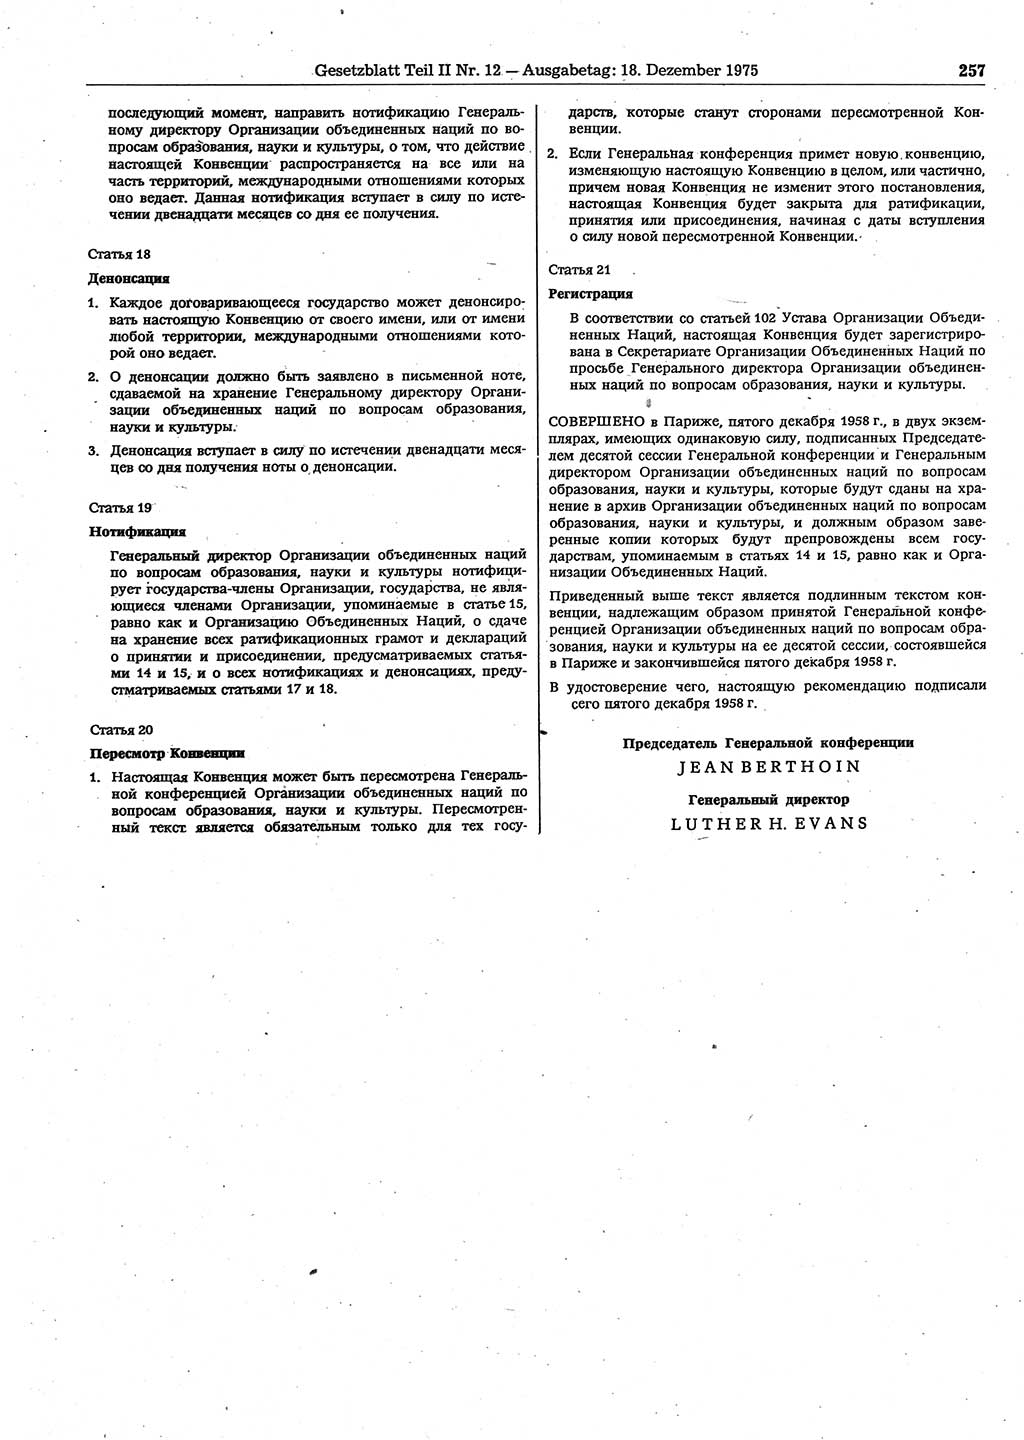 Gesetzblatt (GBl.) der Deutschen Demokratischen Republik (DDR) Teil ⅠⅠ 1975, Seite 257 (GBl. DDR ⅠⅠ 1975, S. 257)